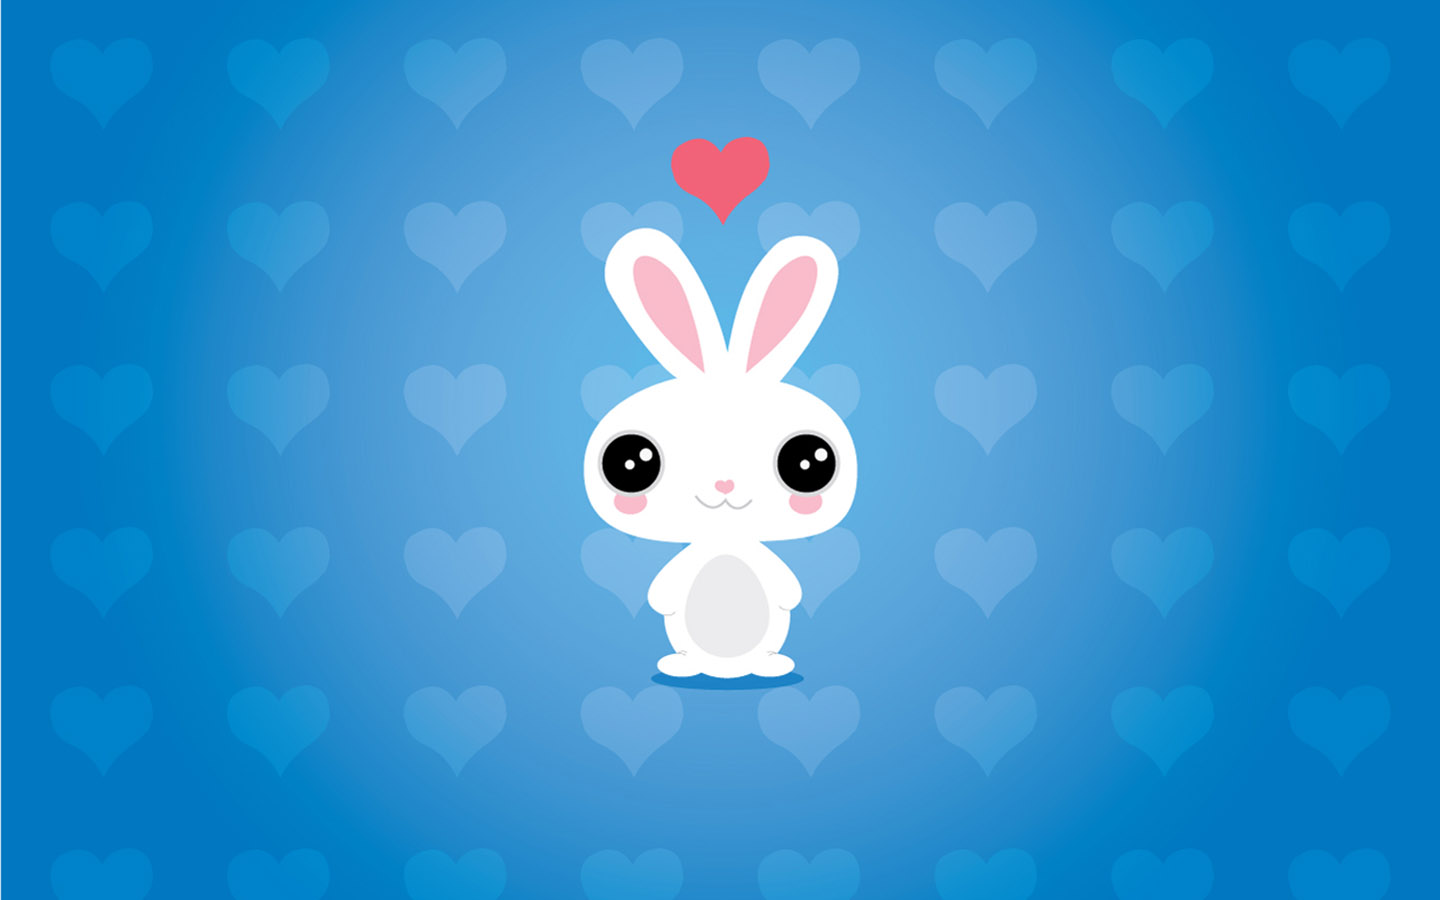 一组可可爱爱的兔子手机壁纸，喜欢小兔子的快来收藏